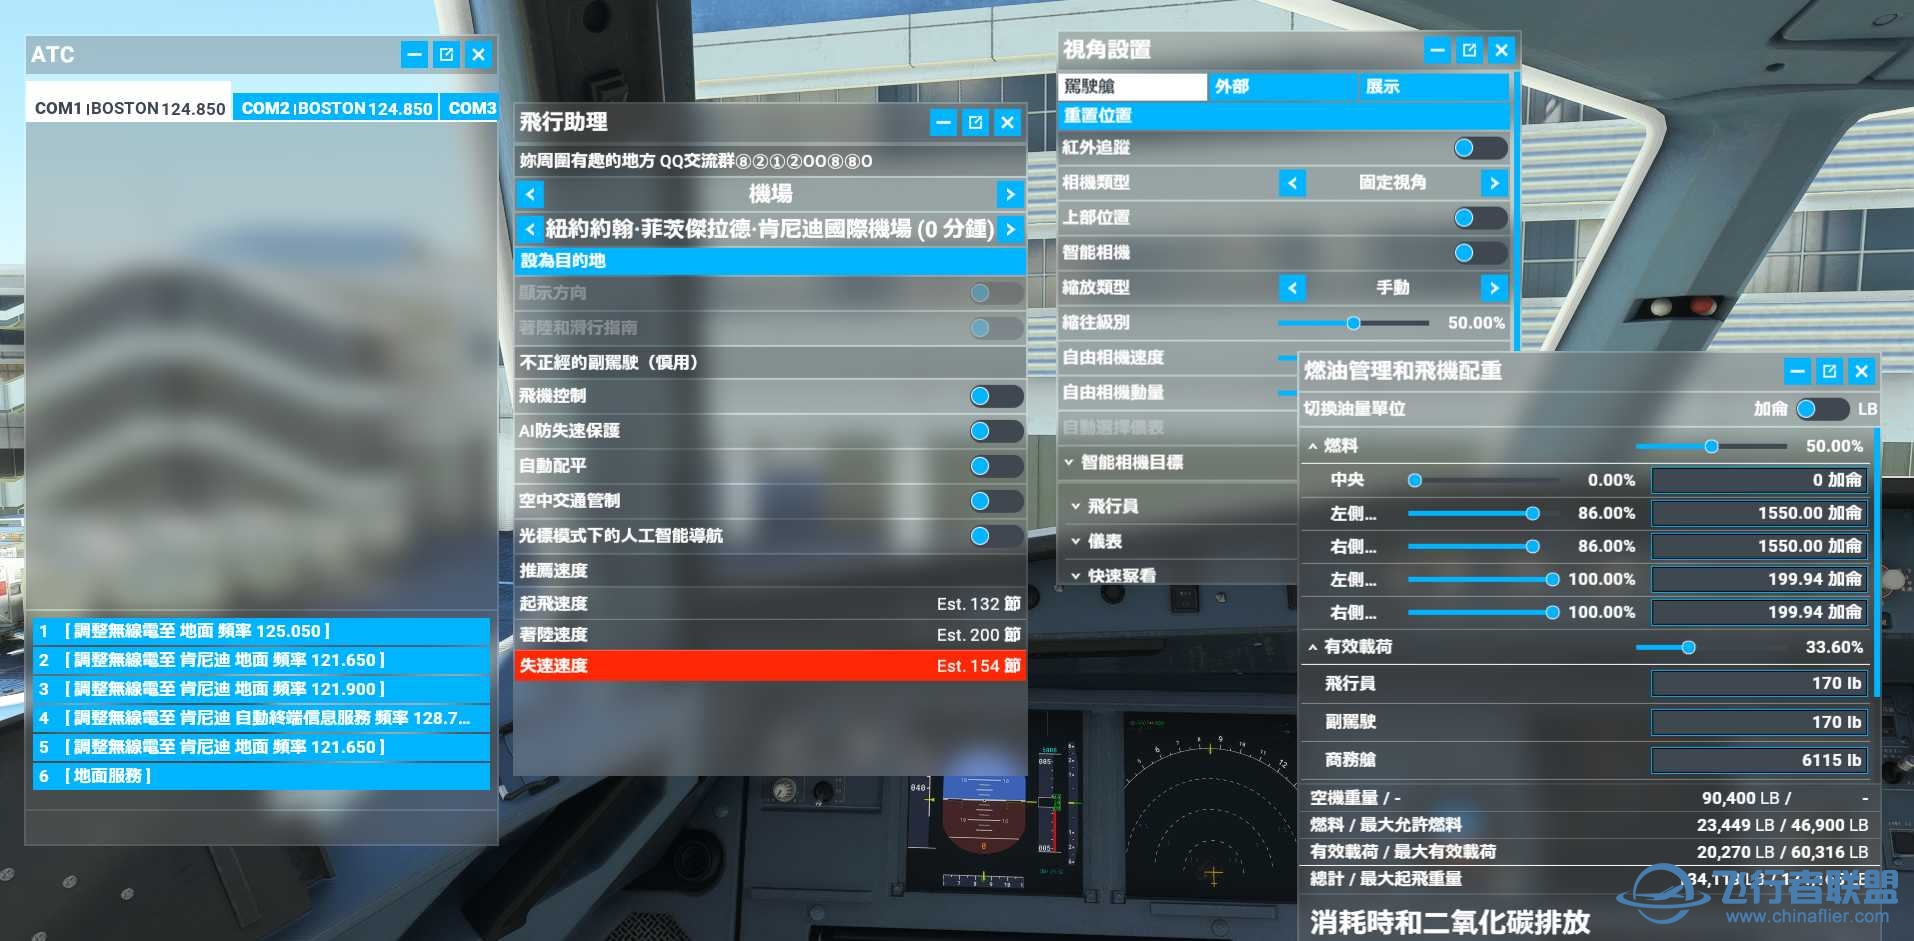 微软模拟飞行2020 1.18.14 繁体中文4.0发布版-6737 